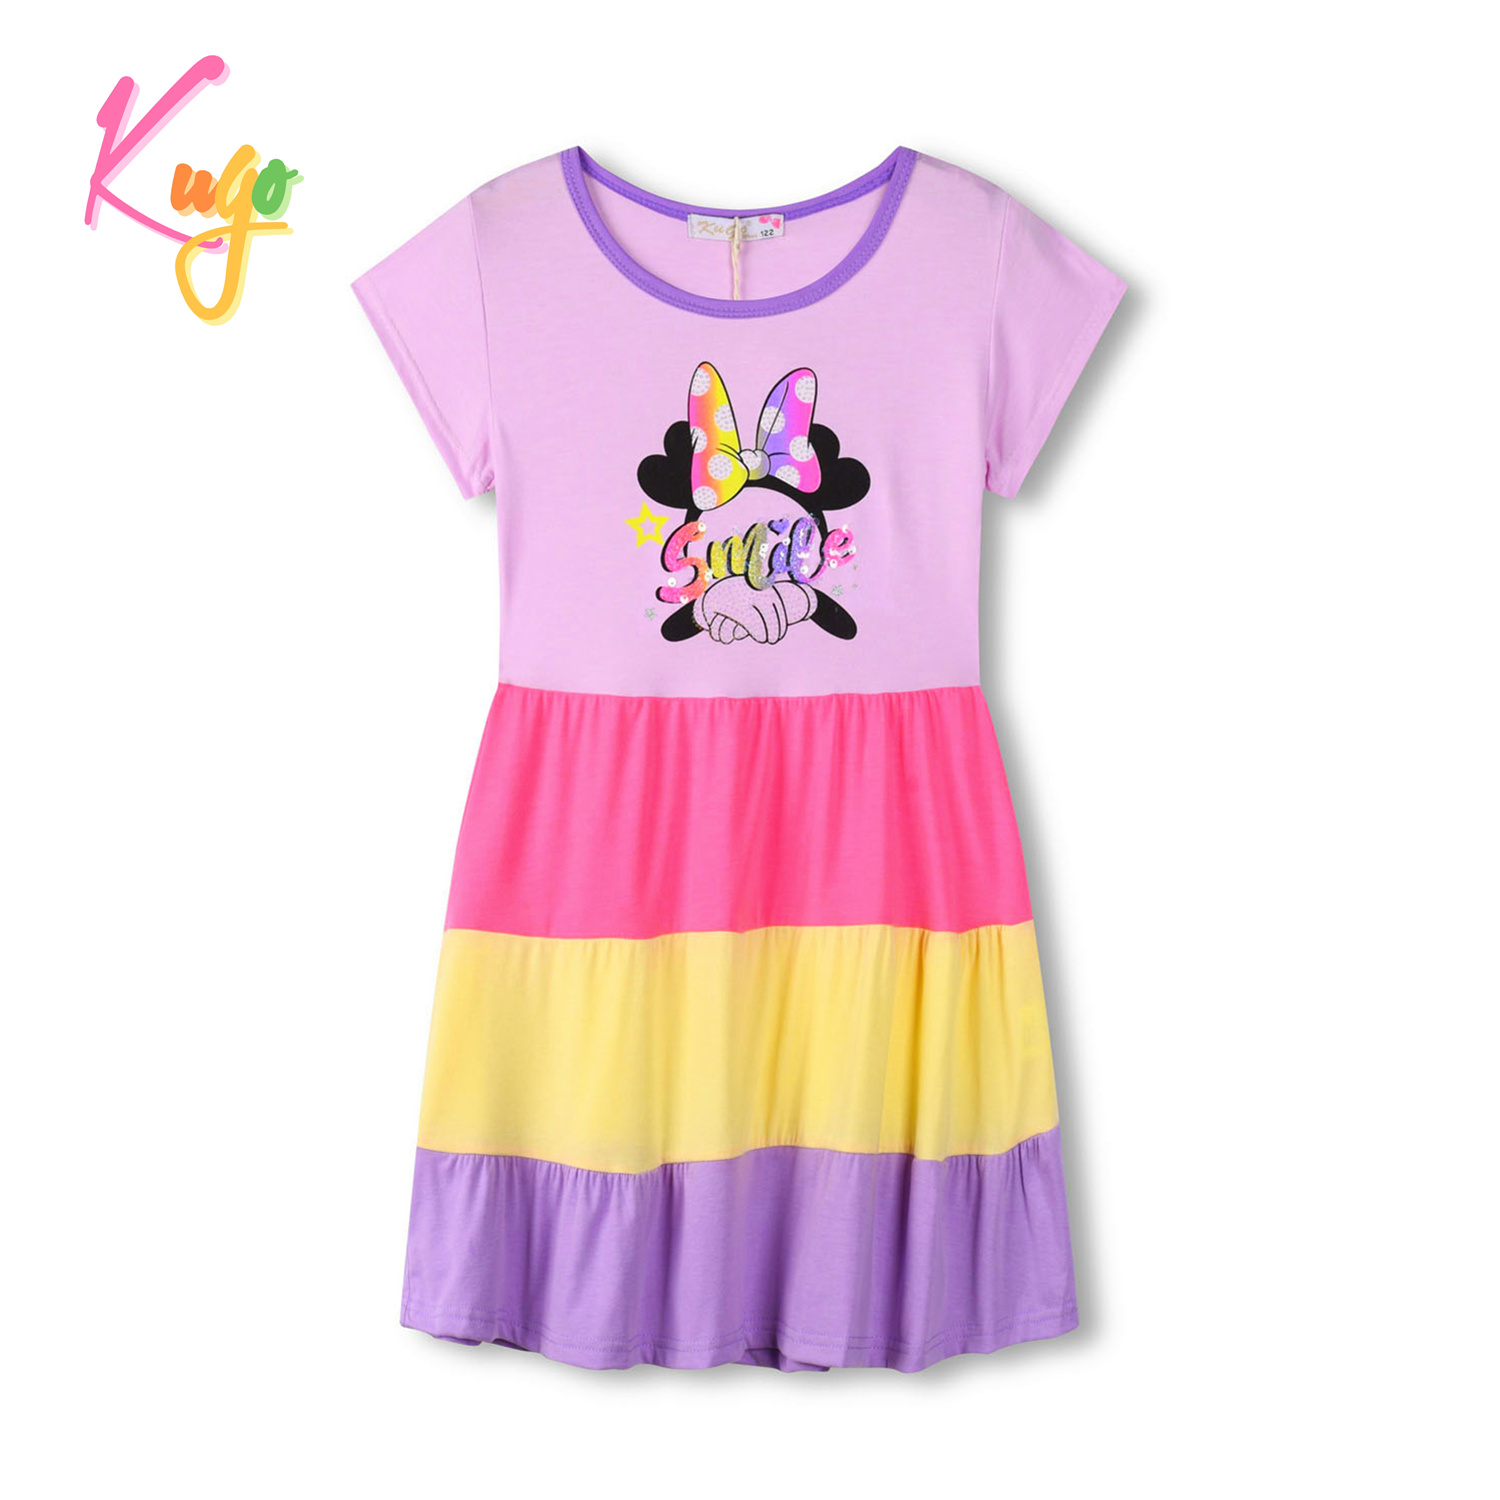 Dívčí šaty - KUGO MS1721, fialková Barva: Fialková, Velikost: 98